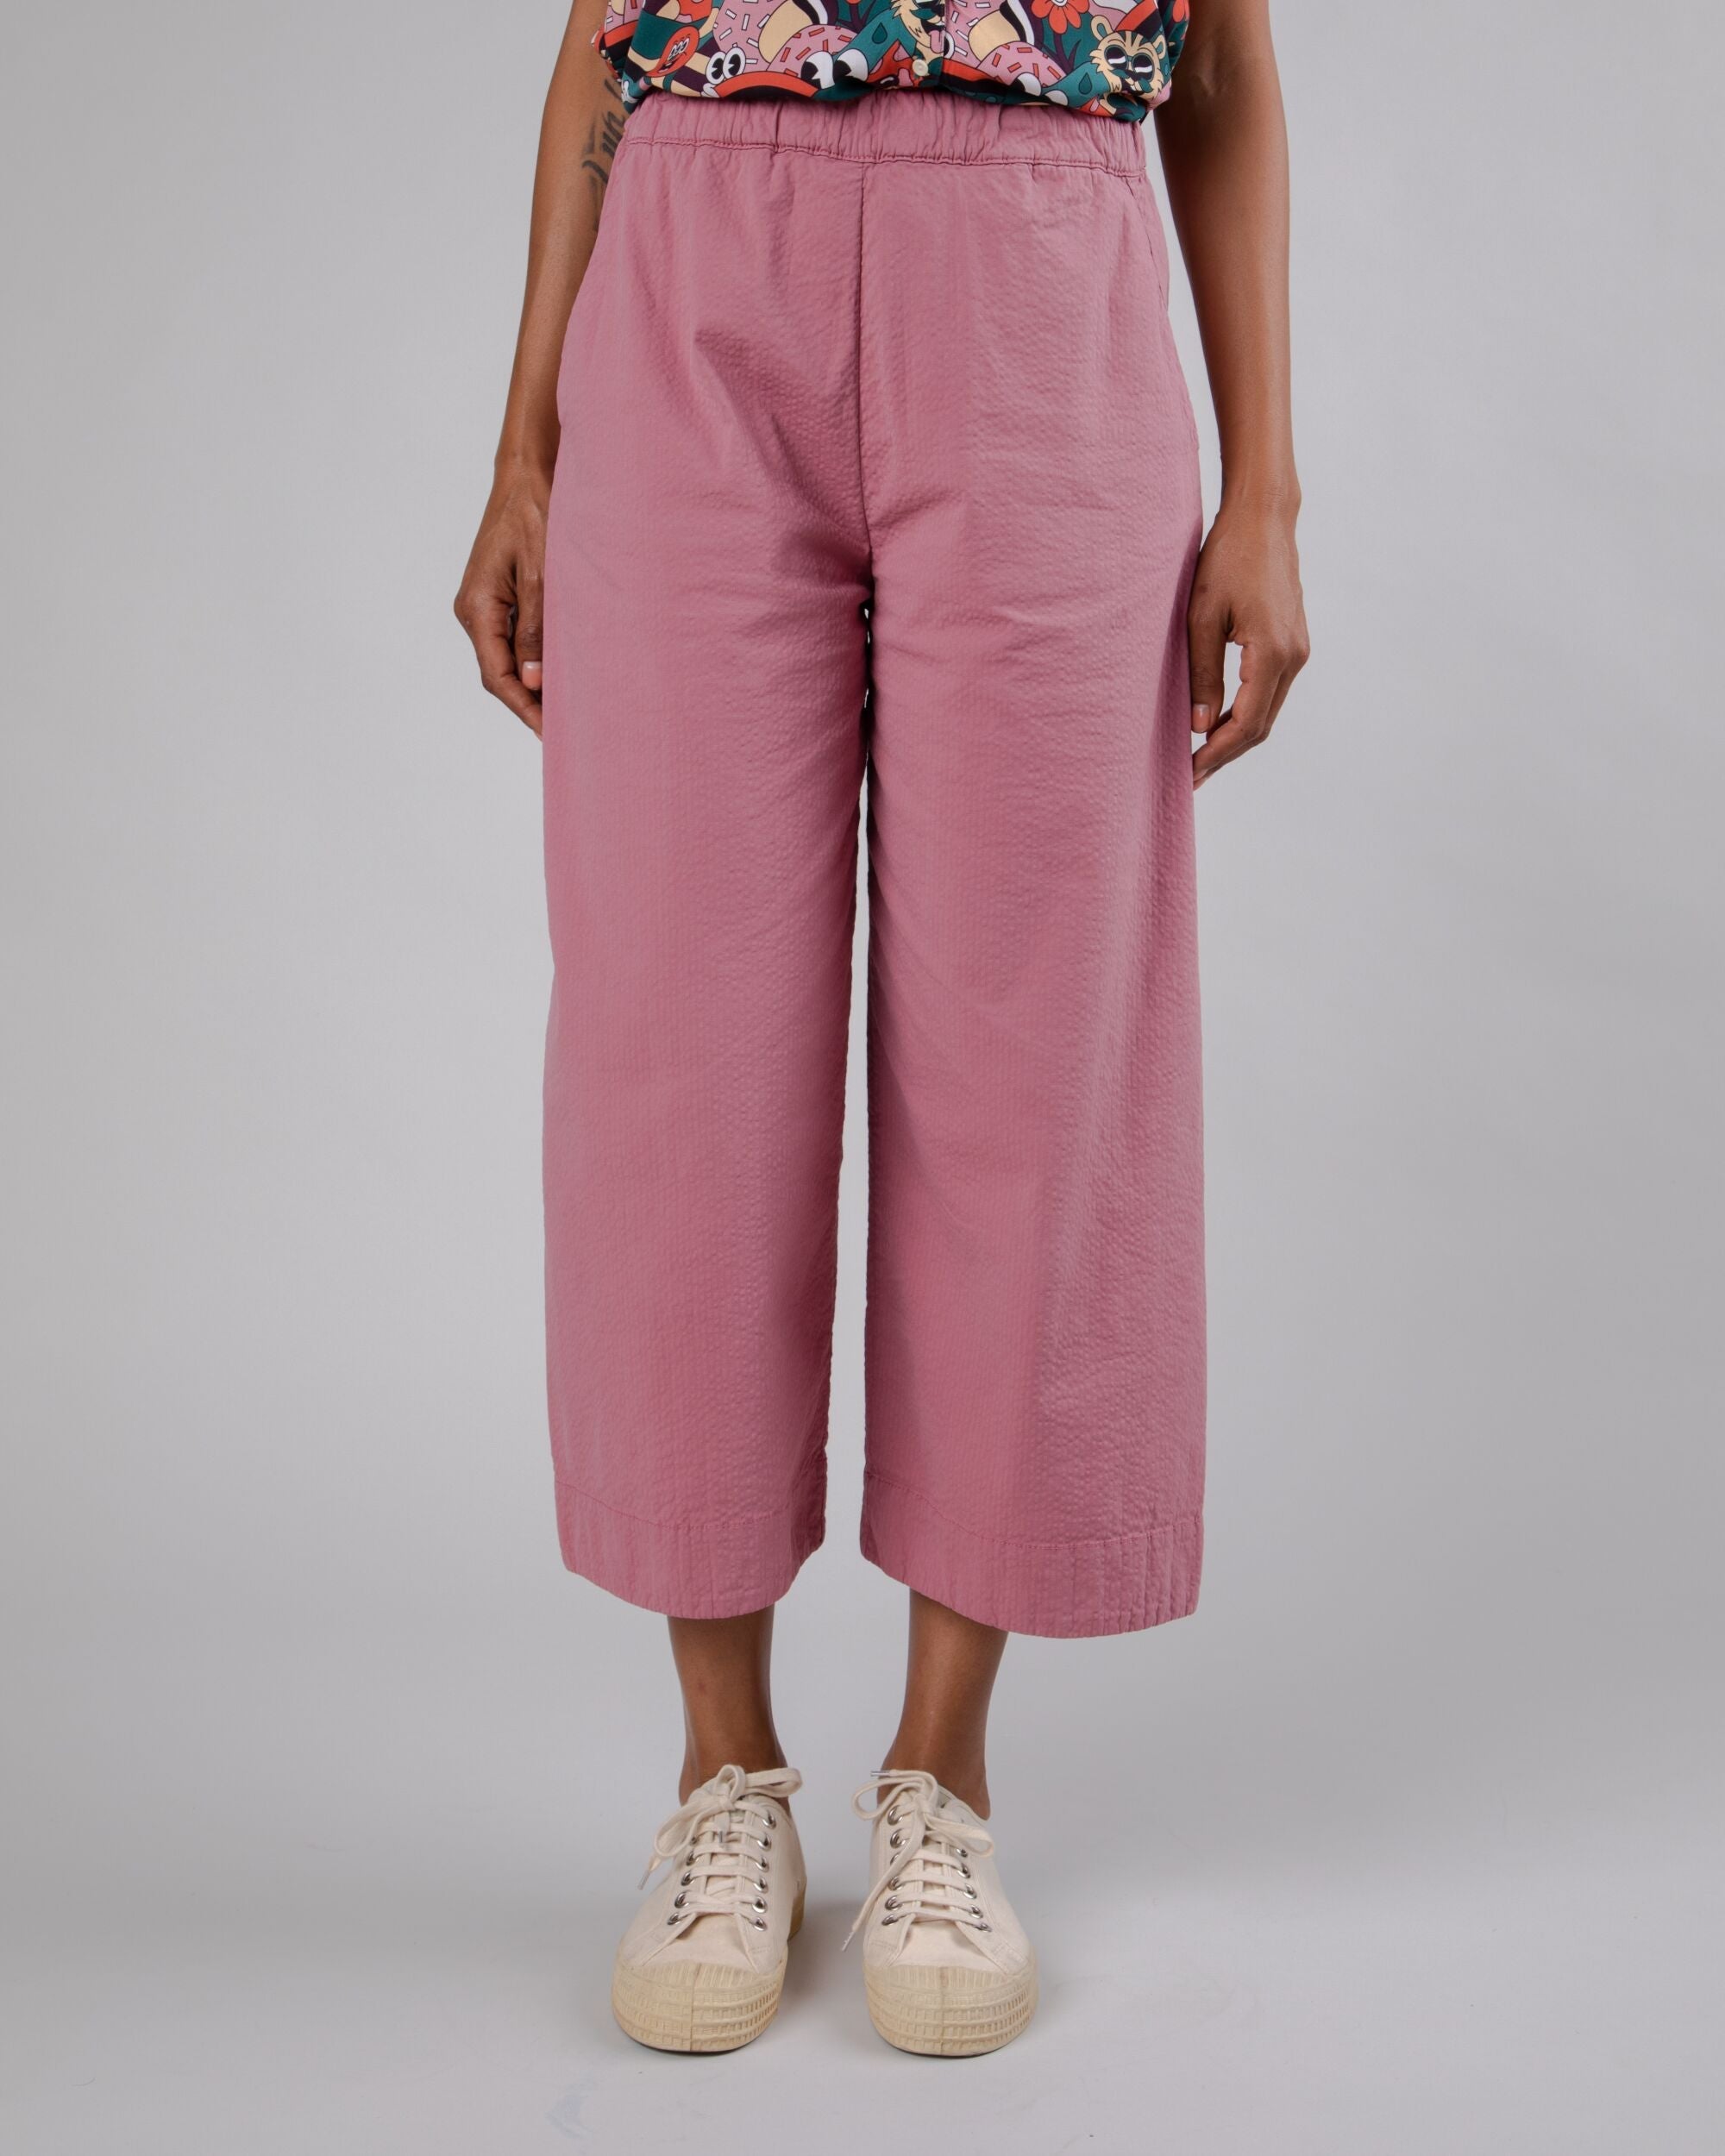 Pantalon oversize Picnic en rose en coton biologique de Brava Fabrics